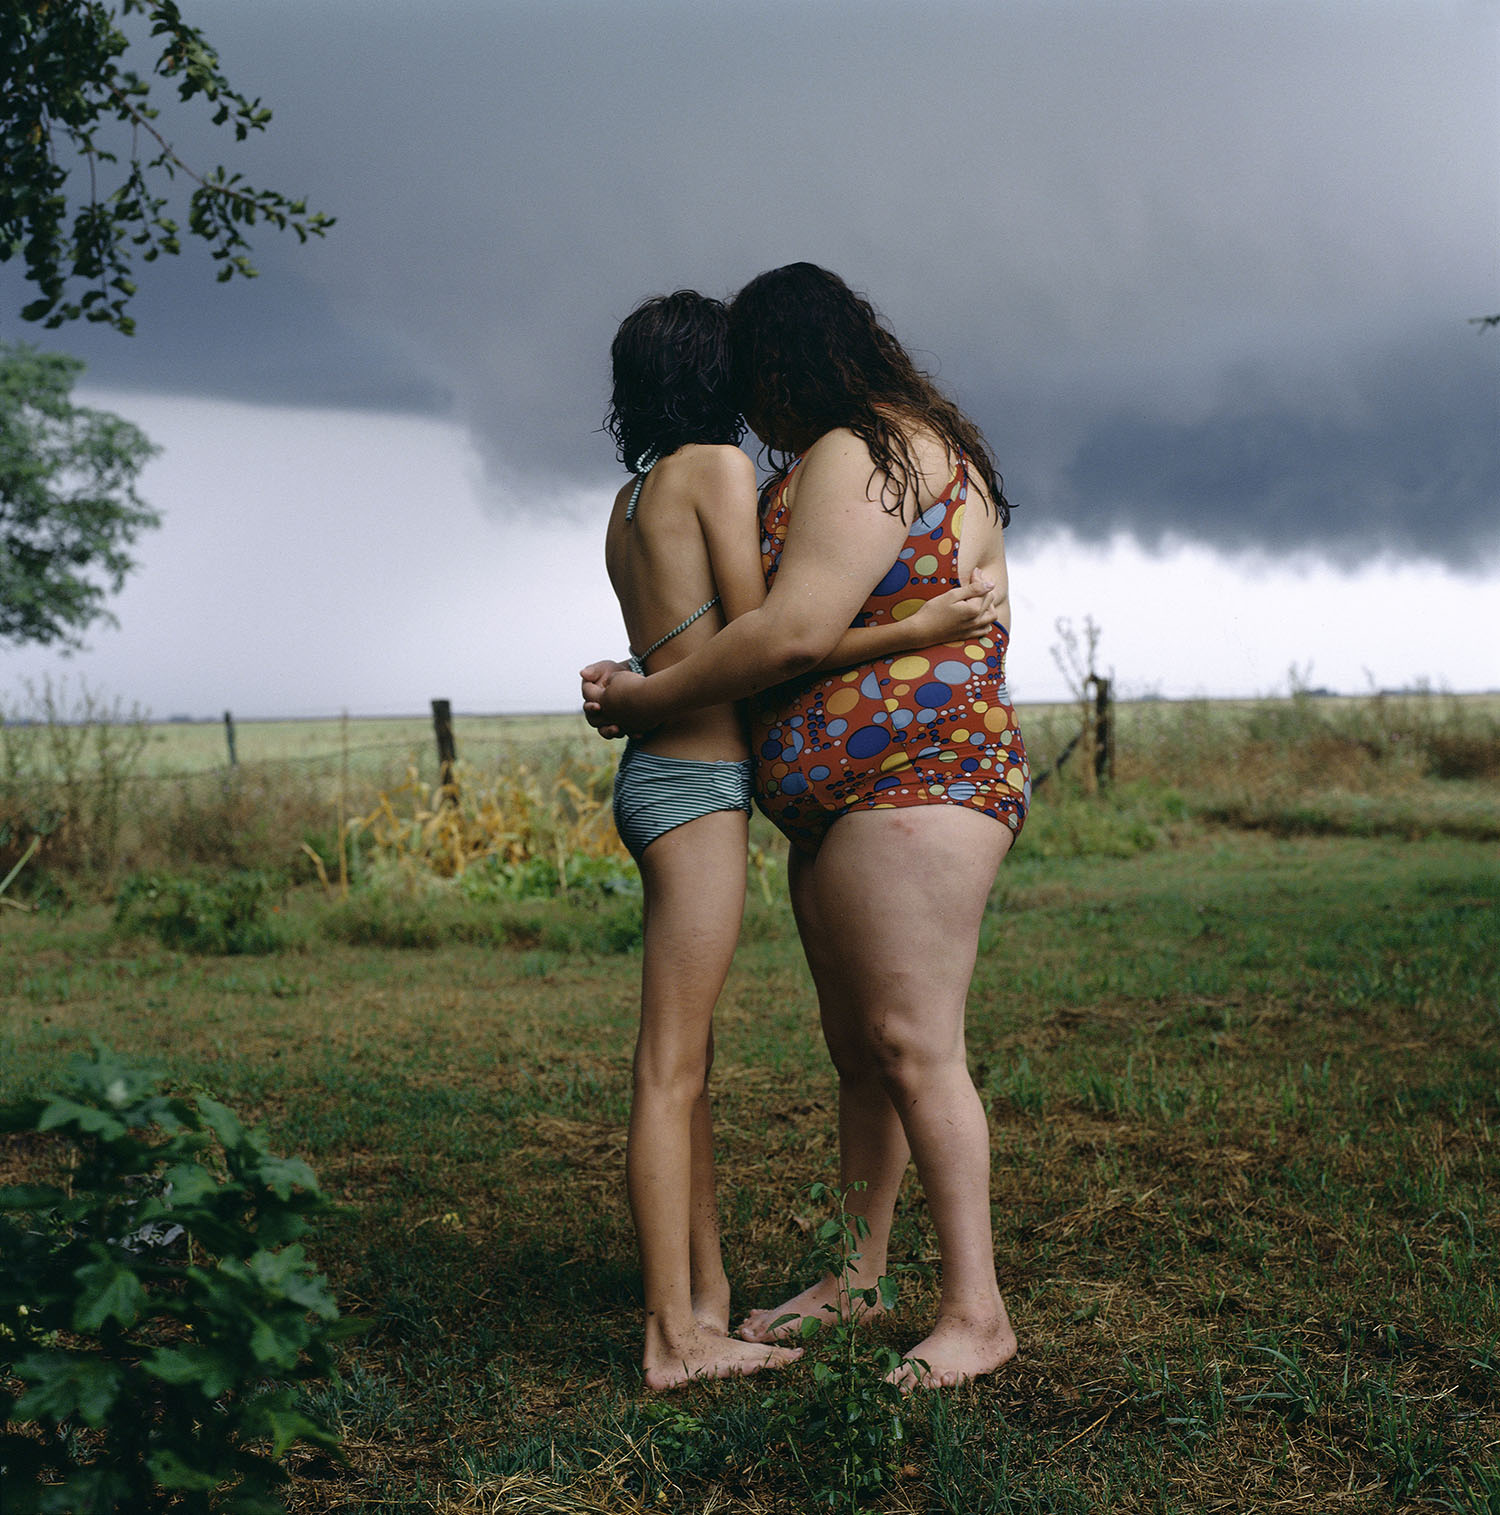  Alessandra Sanguinetti,  The Black Cloud , 2000. © Alessandra Sanguinetti / Magnum Photos 